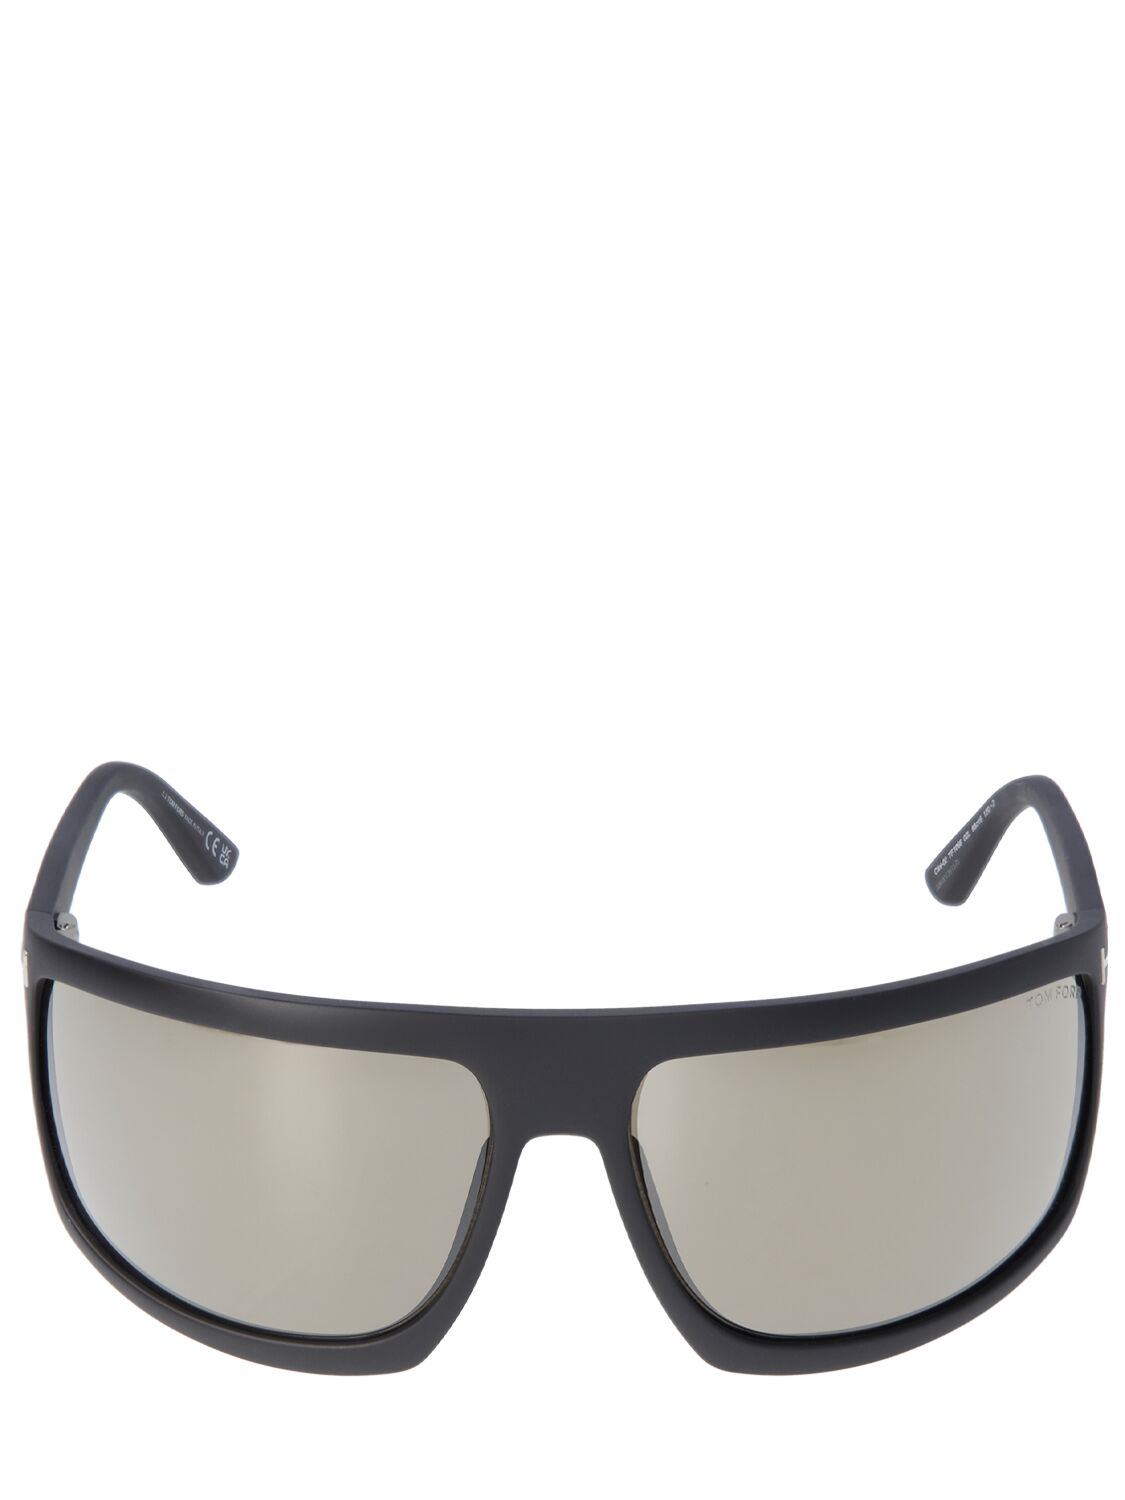 Tom Ford Clint-02 Mask Sunglasses In Black,roviex